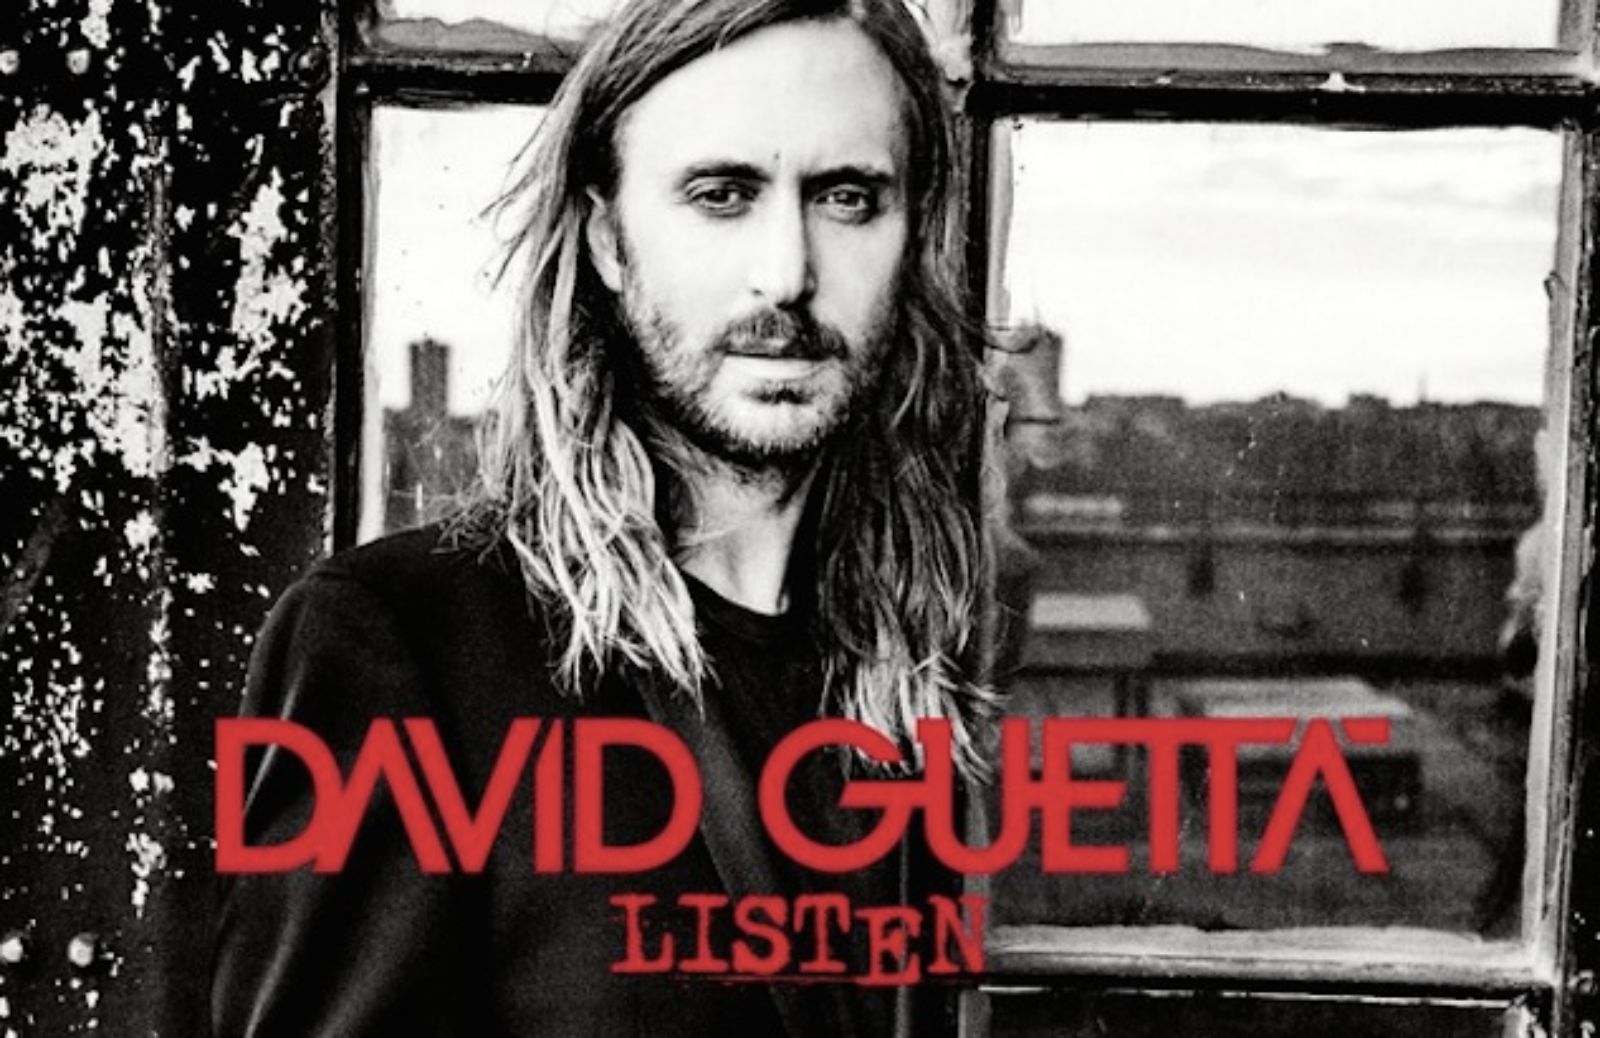 David Guetta nuovo album: arriva Listen